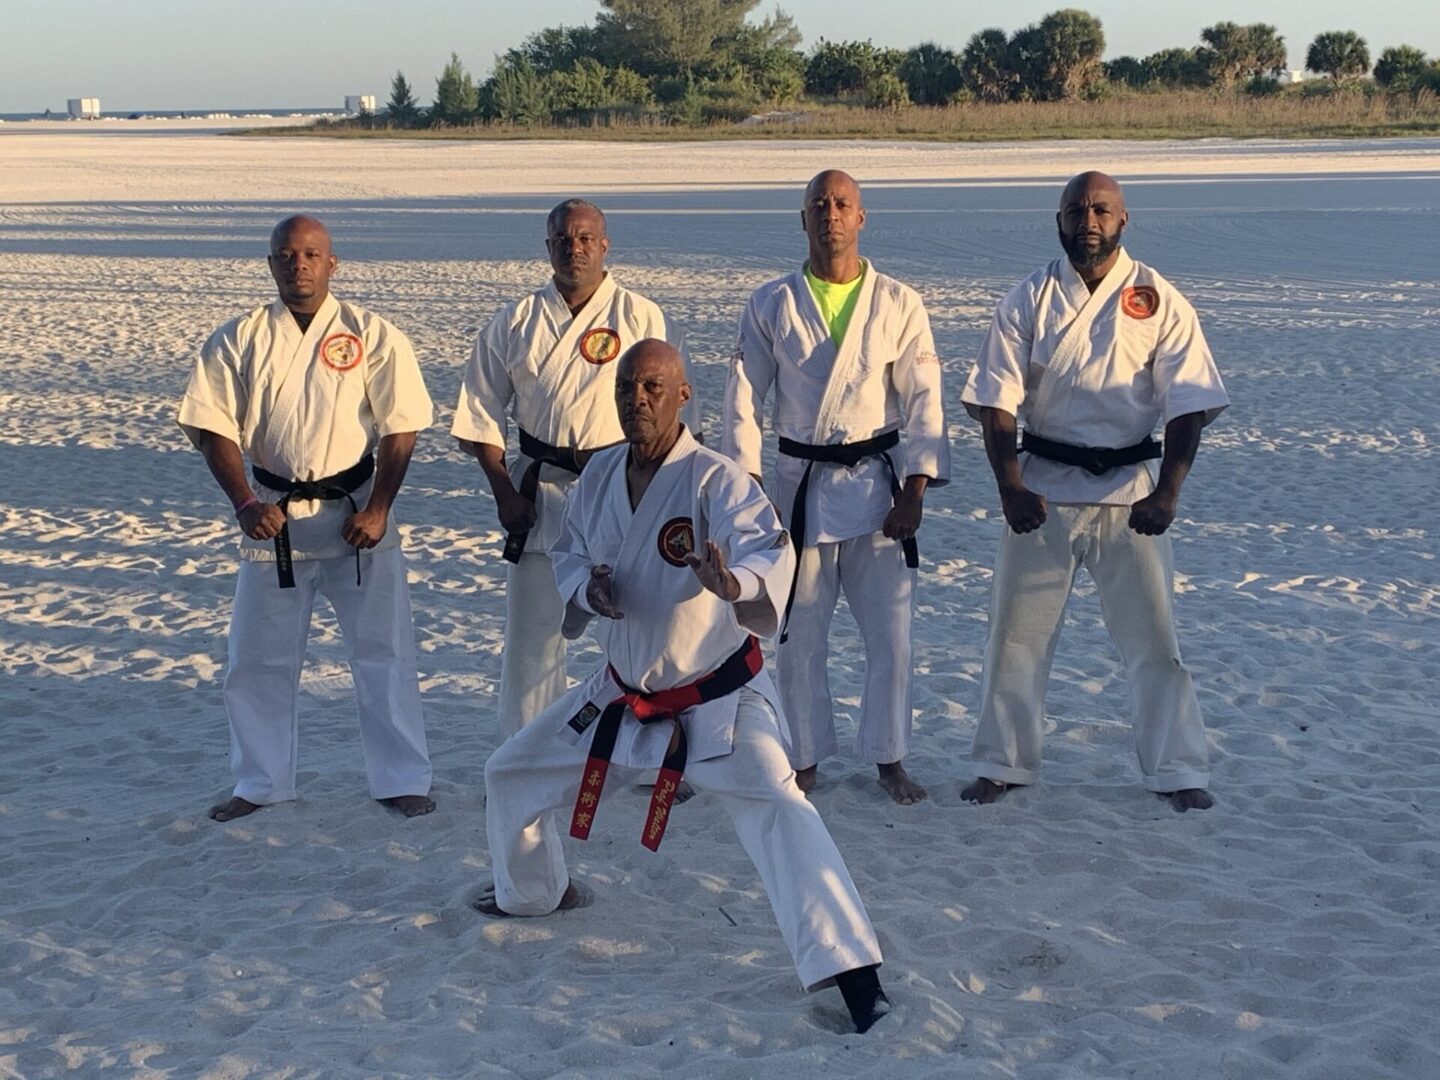 A group of people wearing karate wear